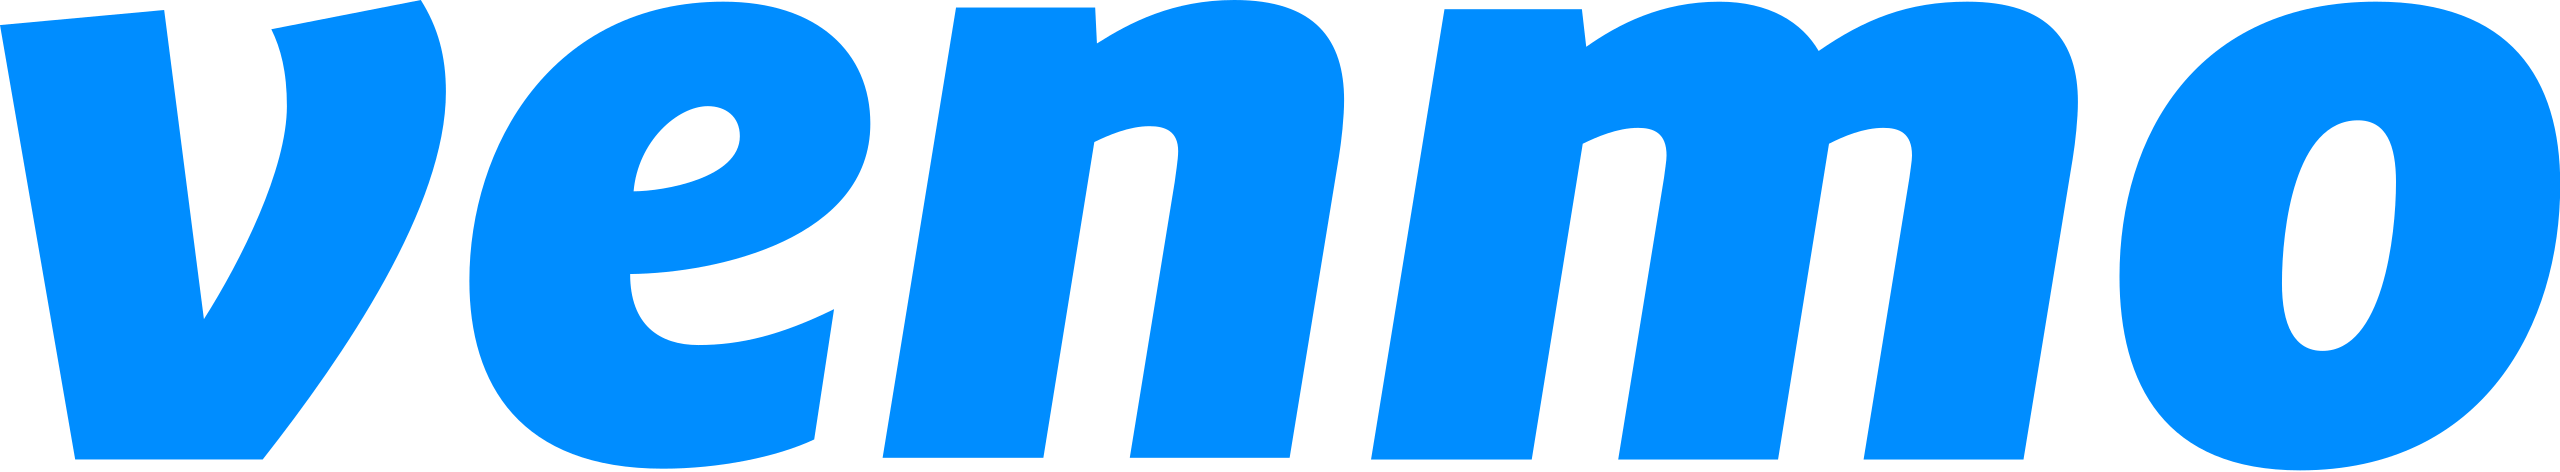 Logotipo de Venmo